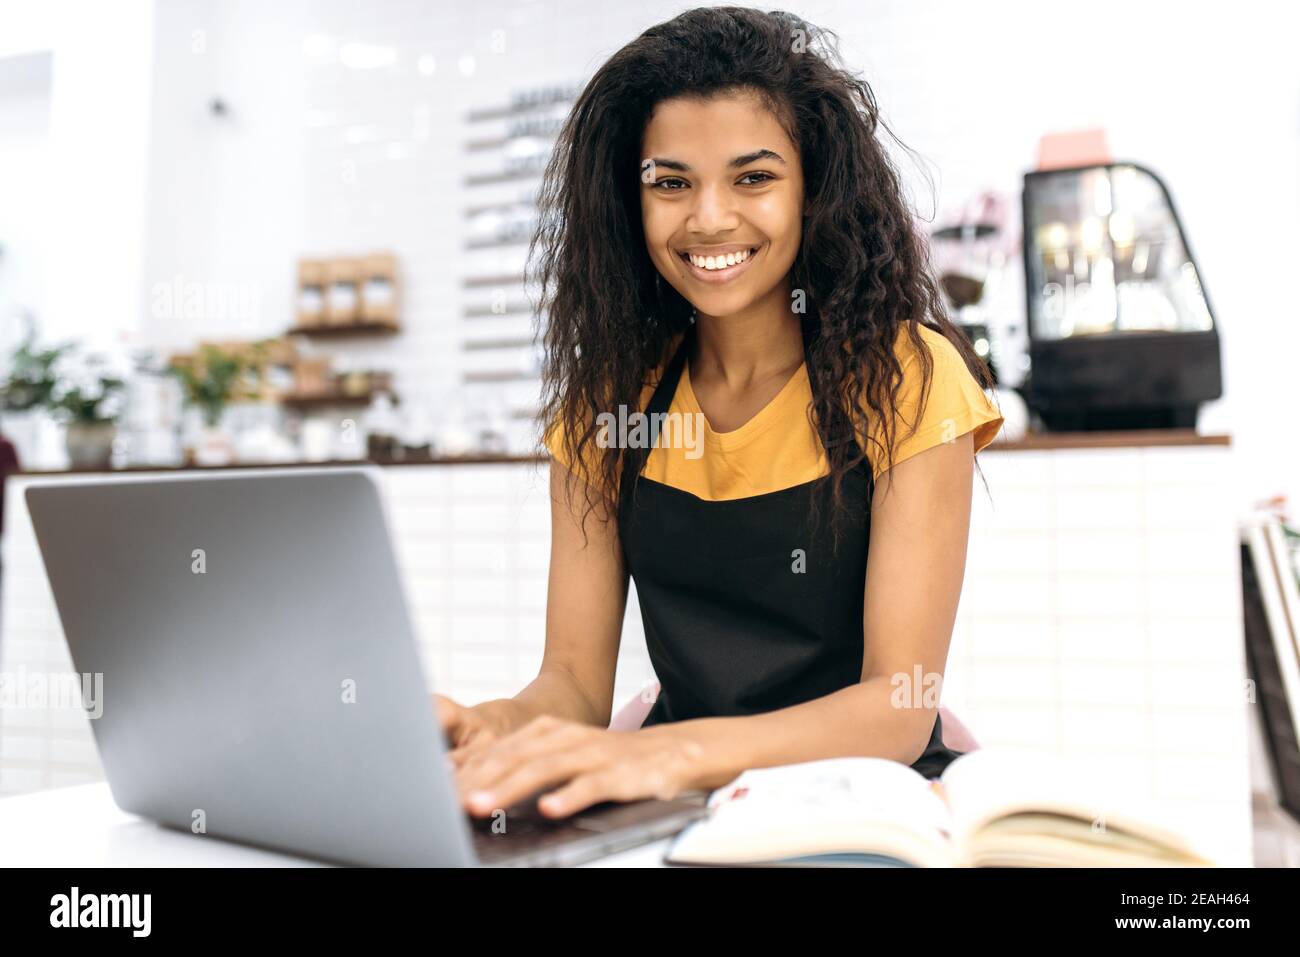 Zufriedene junge afroamerikanische weibliche Kleinunternehmerin oder Kellnerin, studiert Kleinunternehmen monatliche Abrechnung mit Laptop, schaut auf die Kamera mit Lächeln, sitzen in ihrem Café Stockfoto